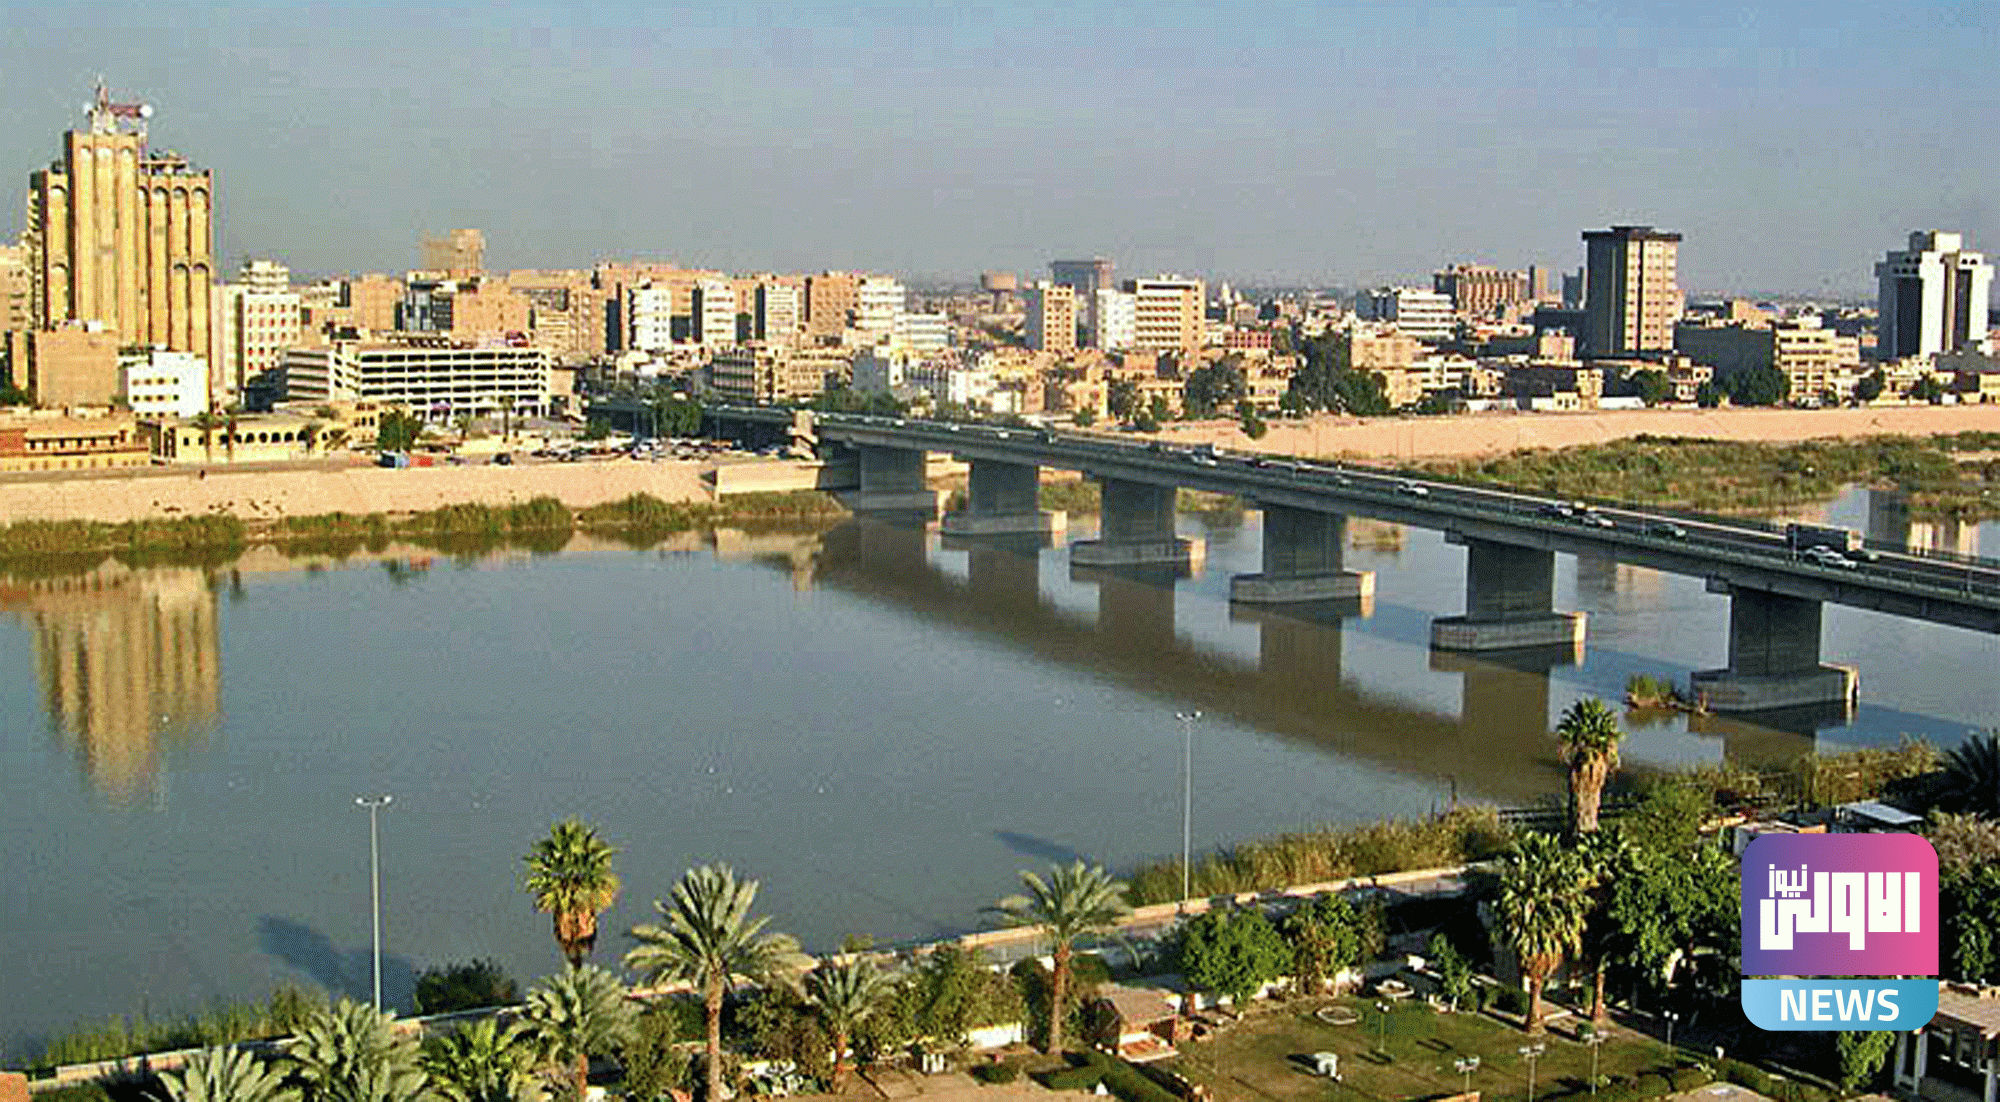 ترجع اصول أسماء كثير من مدن العراق القديم إلى اللغات